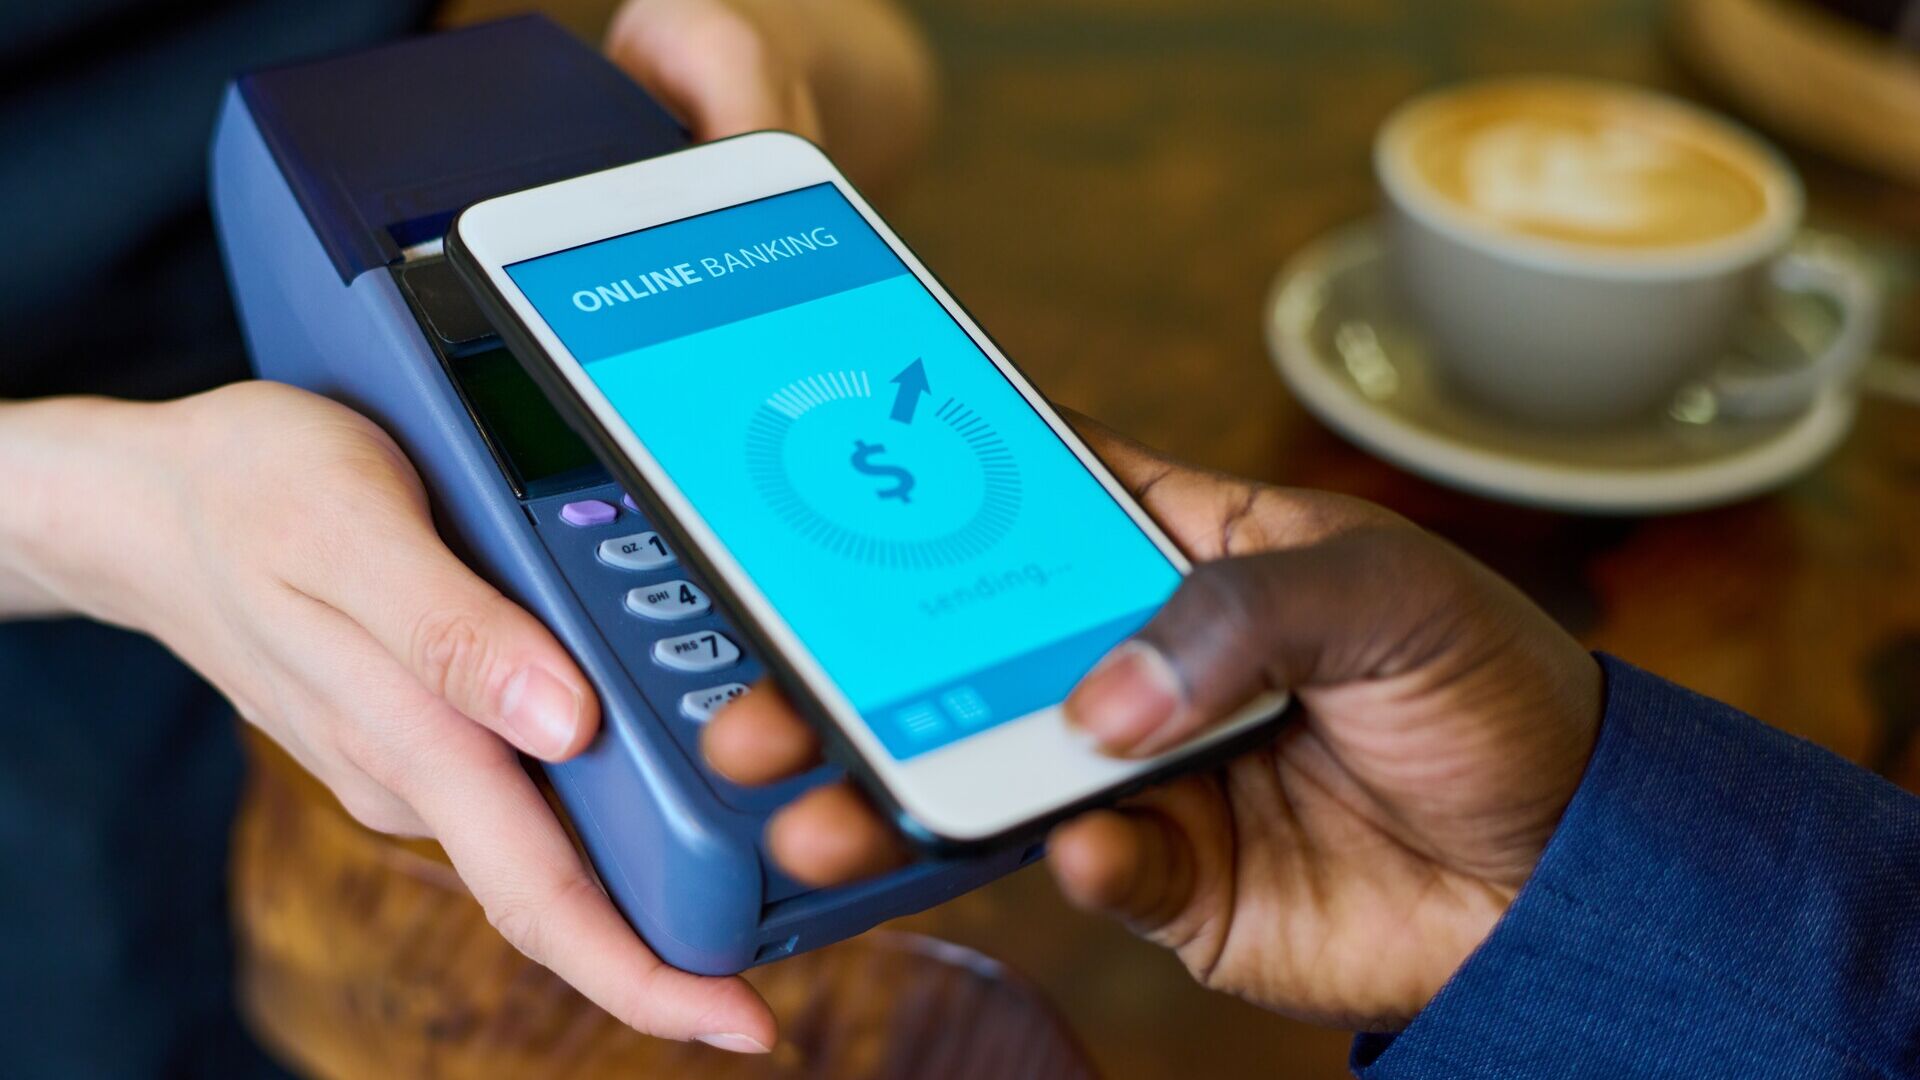 Mobilno plaćanje: prednosti mobilnog plaćanja su praktičnost, brzina i dodatne sigurnosne značajke, kao što su otisci prstiju ili prepoznavanje lica